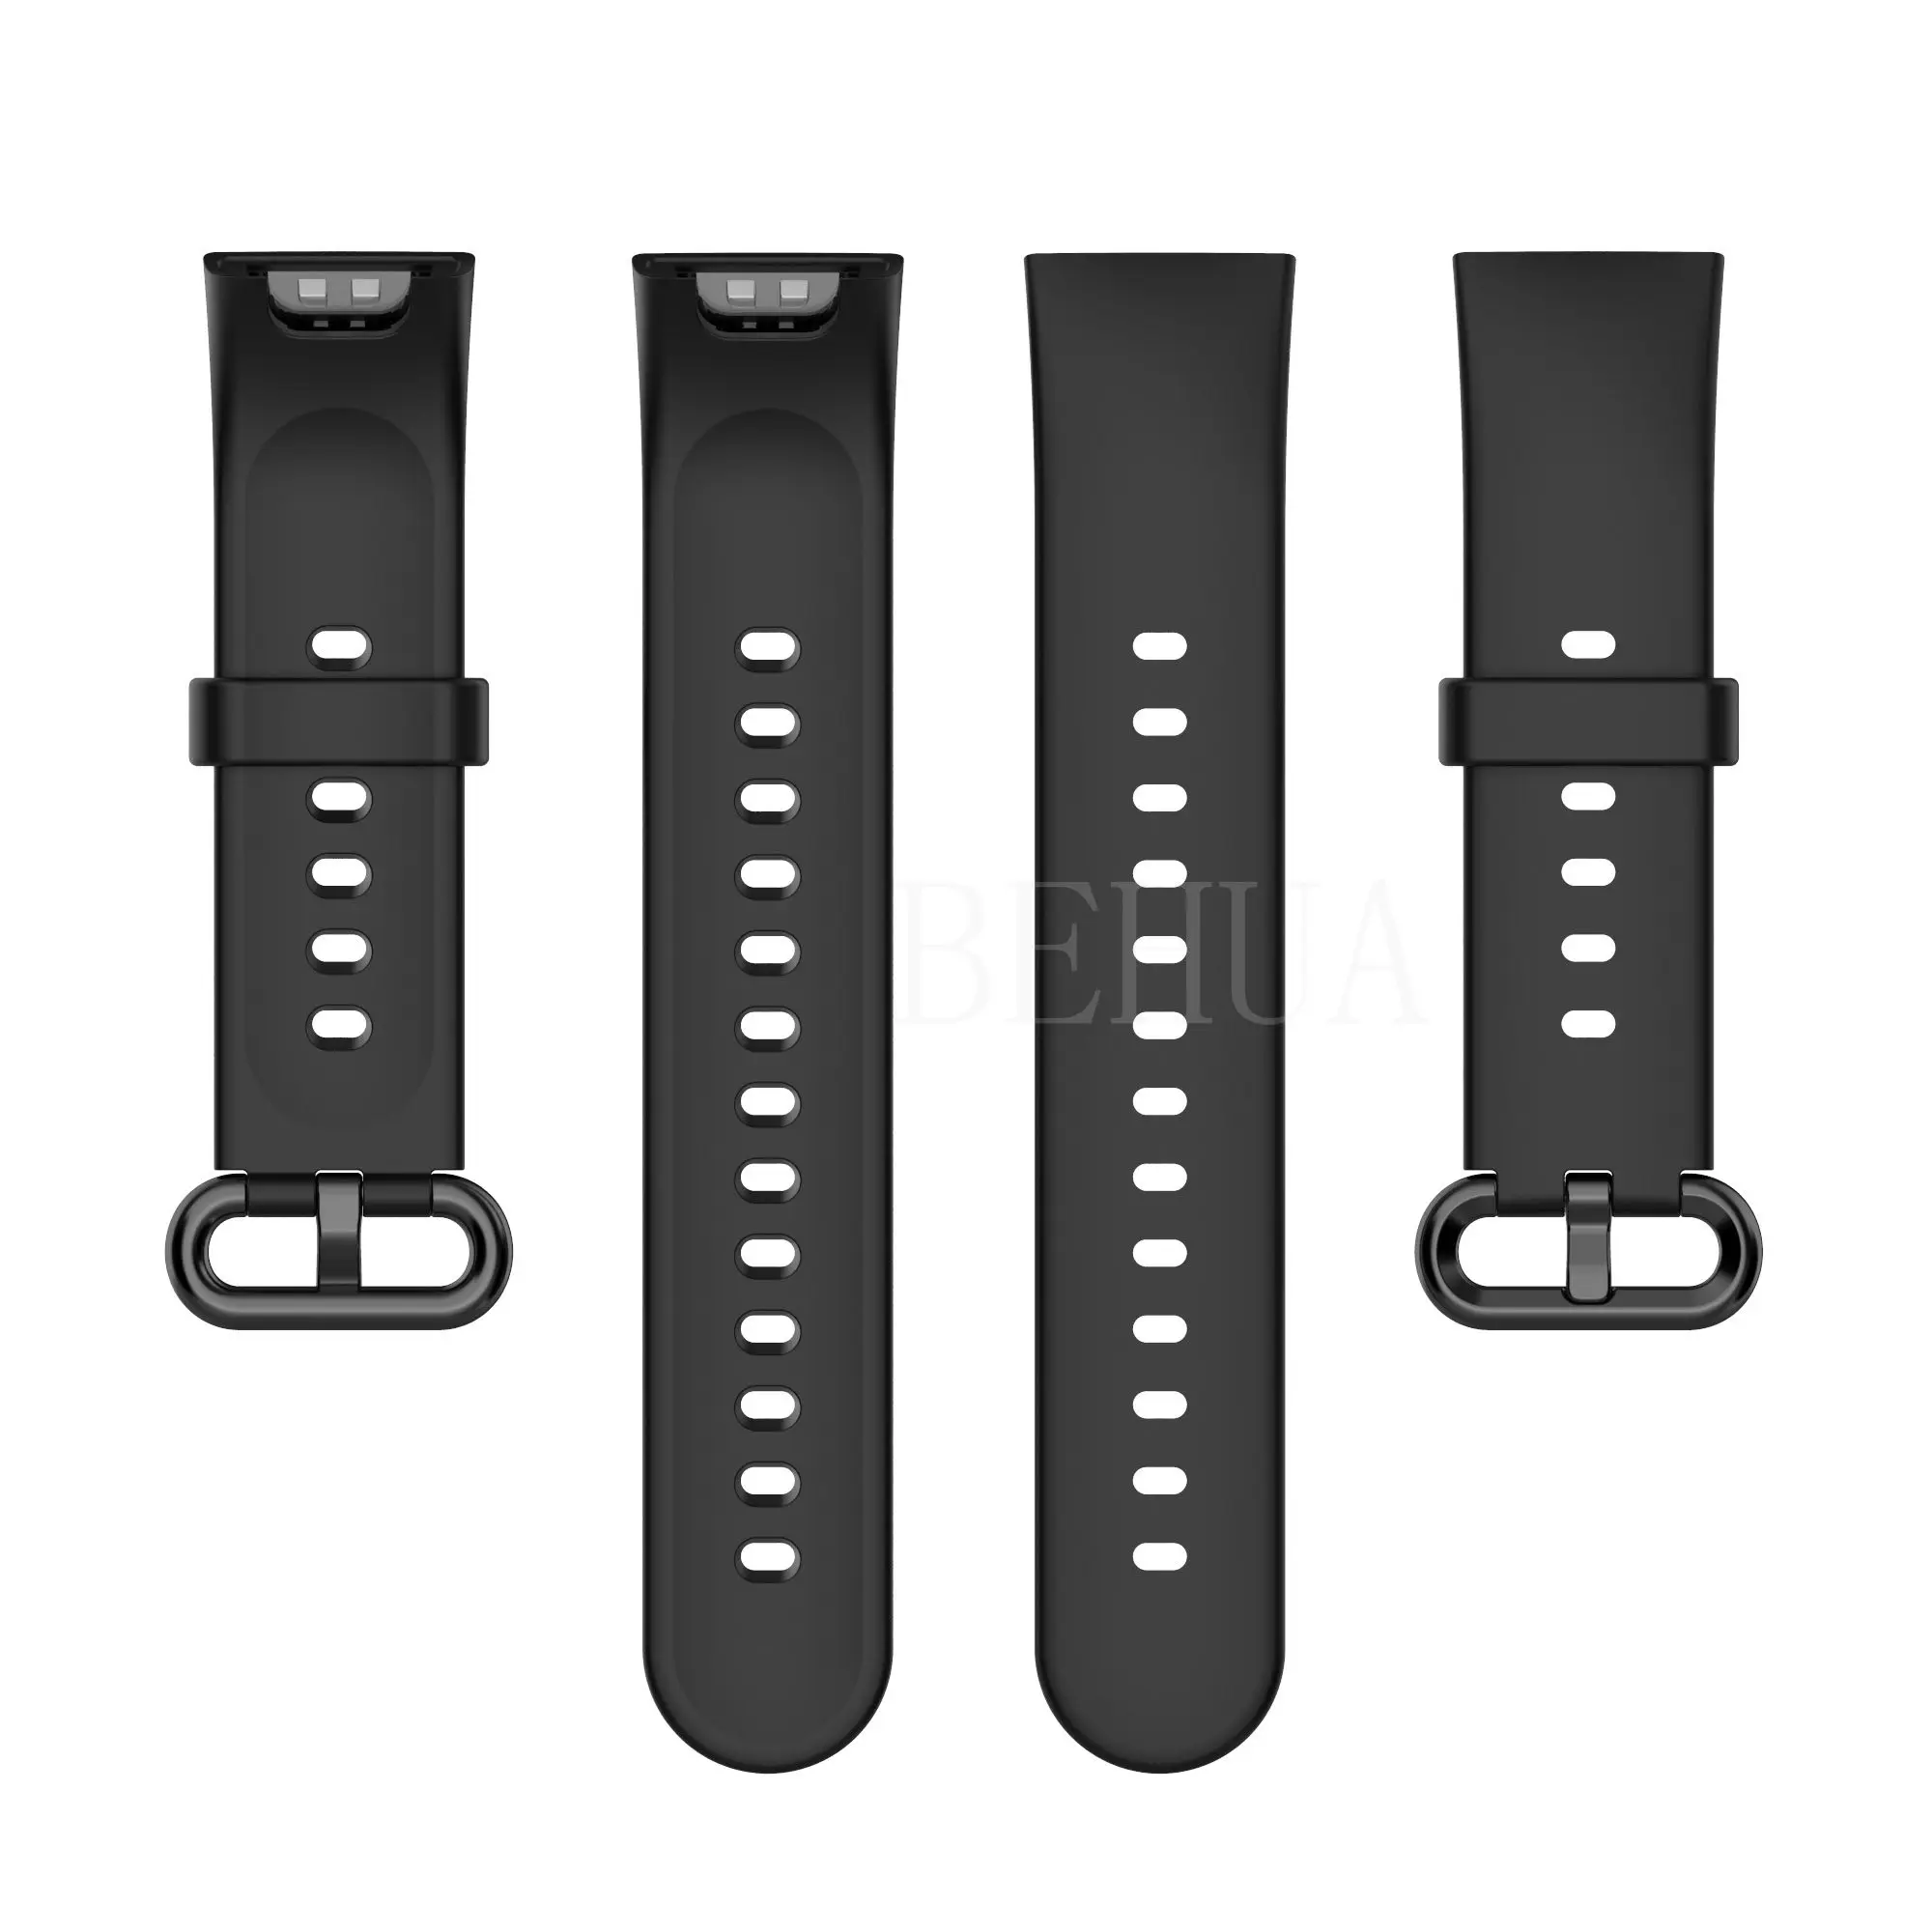  Para Redmi Watch 2 bandas, correas de silicona suave, pulsera  deportiva, transpirable y resistente al sudor, accesorios de repuesto para  Xiaomi Redmi Watch 2 Lite, regalo de Navidad ideal para mujeres 